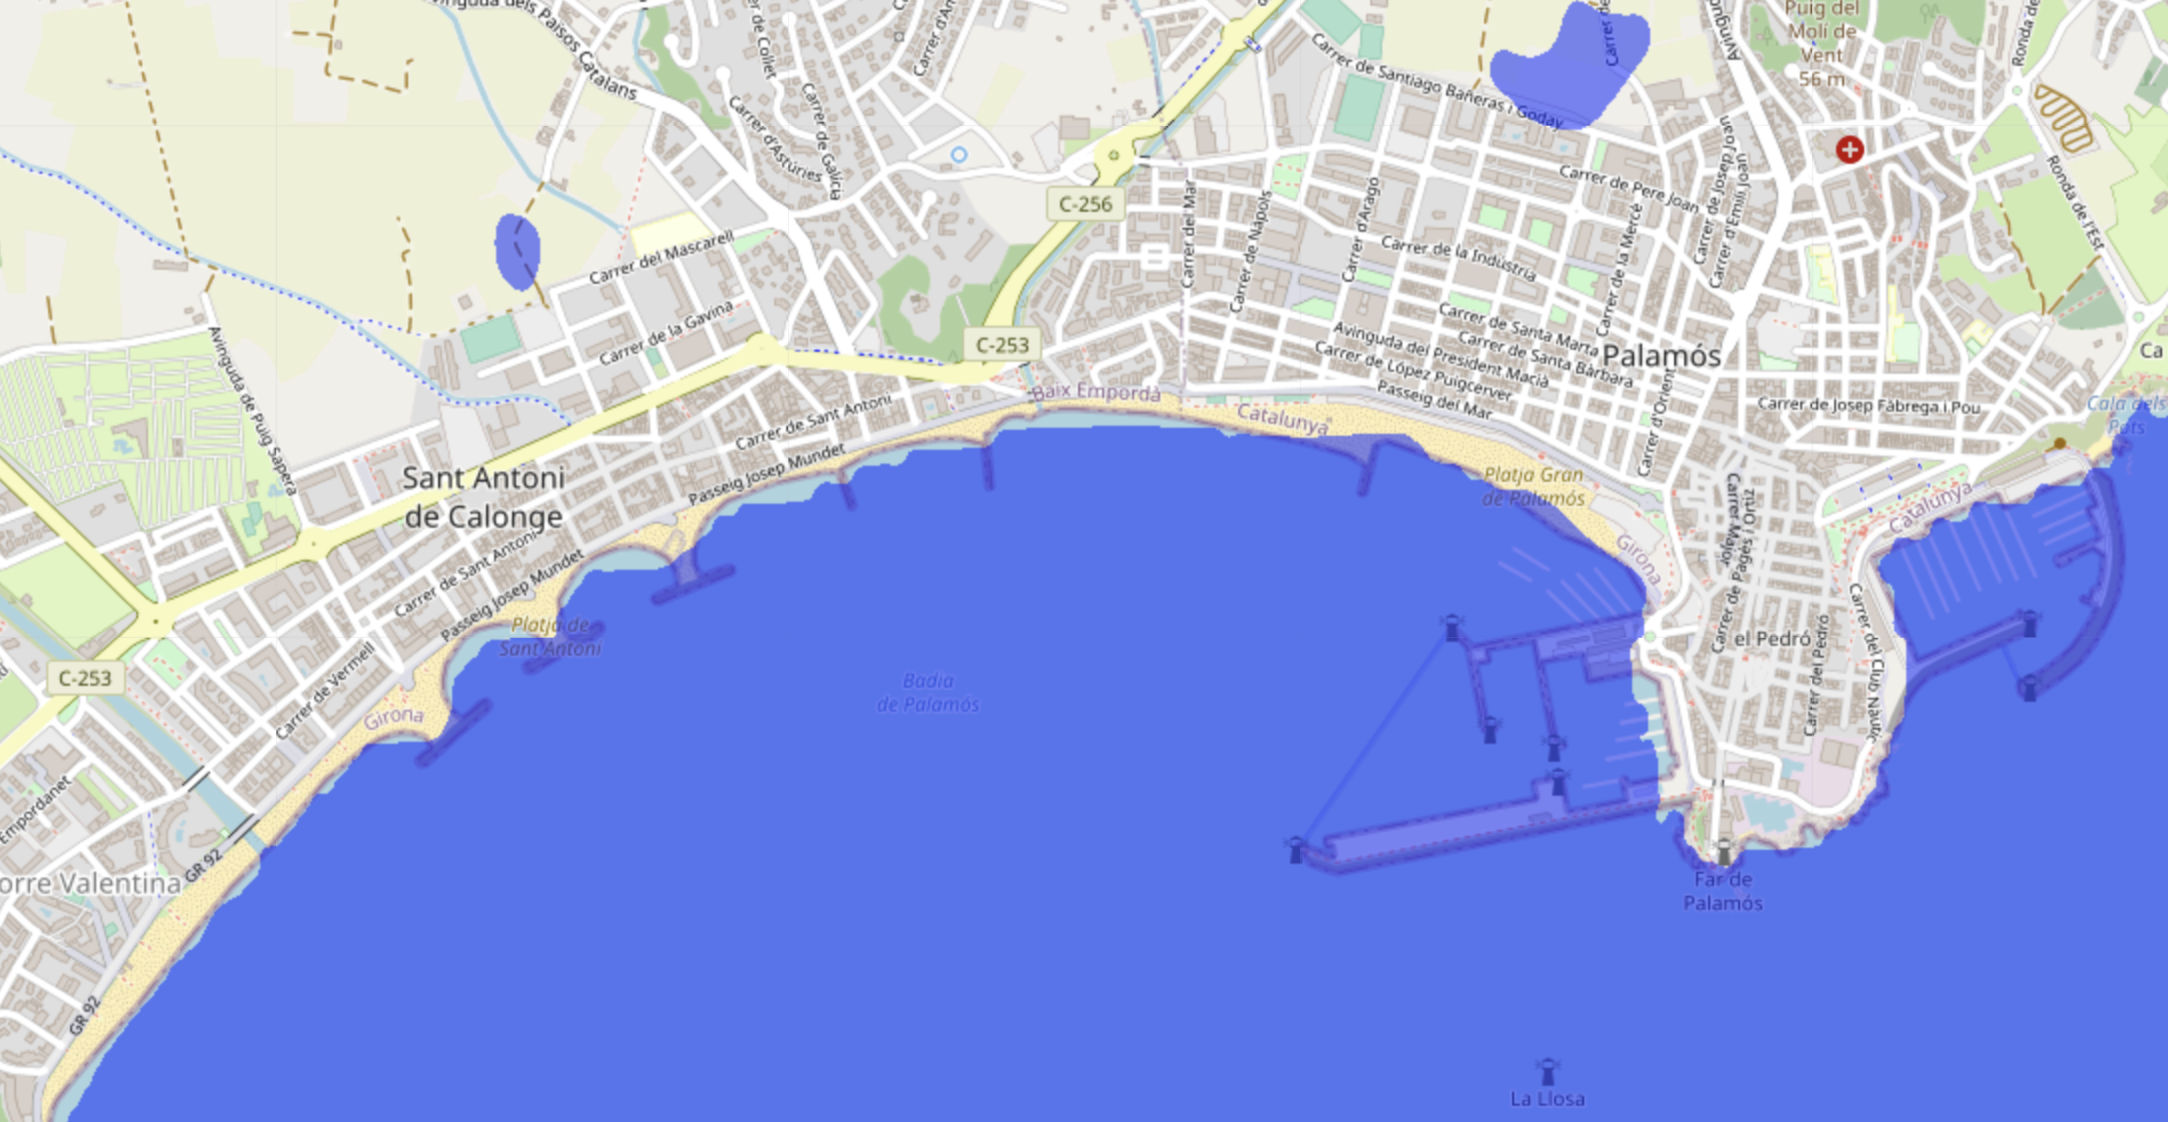 Augment del nivell del mar a la zona de Palamós i Calonge i Sant Antoni